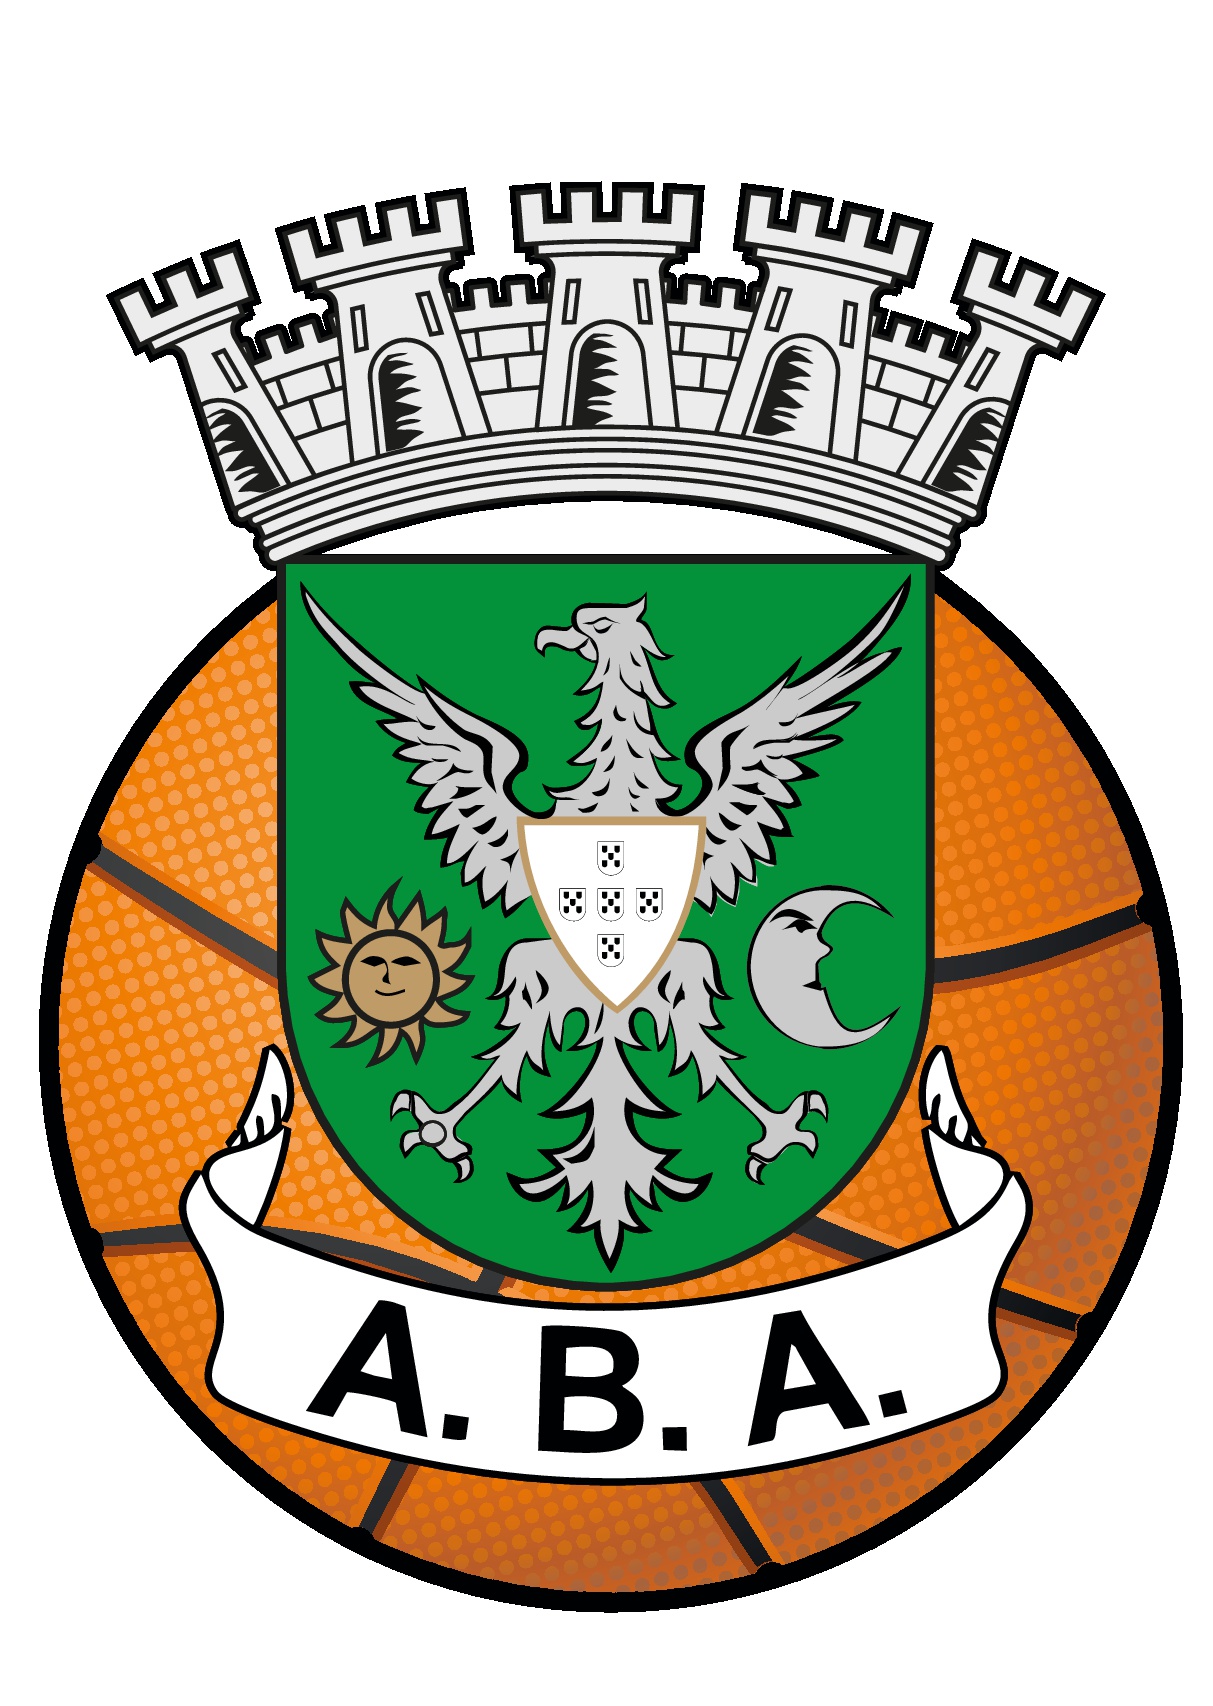 Associação de Basquetebol de Aveiro